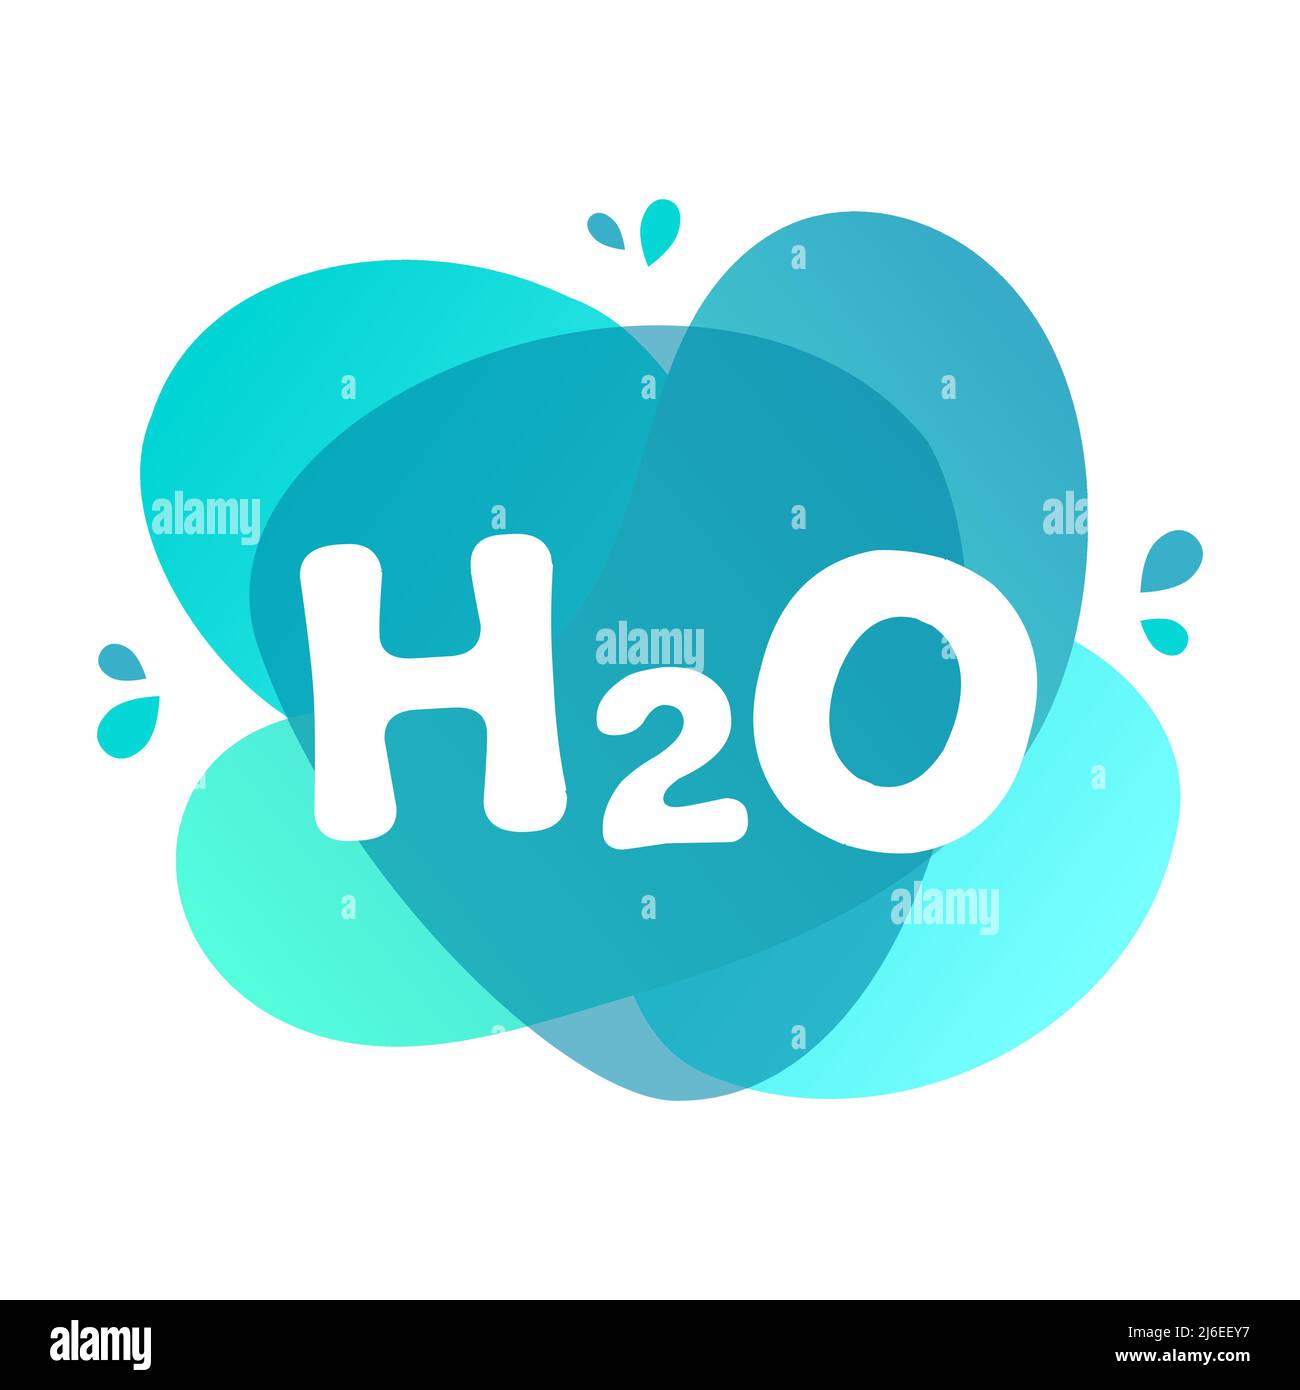 Wassersymbol auf blauem Splatter-Hintergrund. H2O Zeichen auf flüssigen Formen. Trendiges Wassersymbol. Erhaltung der natürlichen Ressourcen. Sauberes frisches Trinkwasser. Stock Vektor